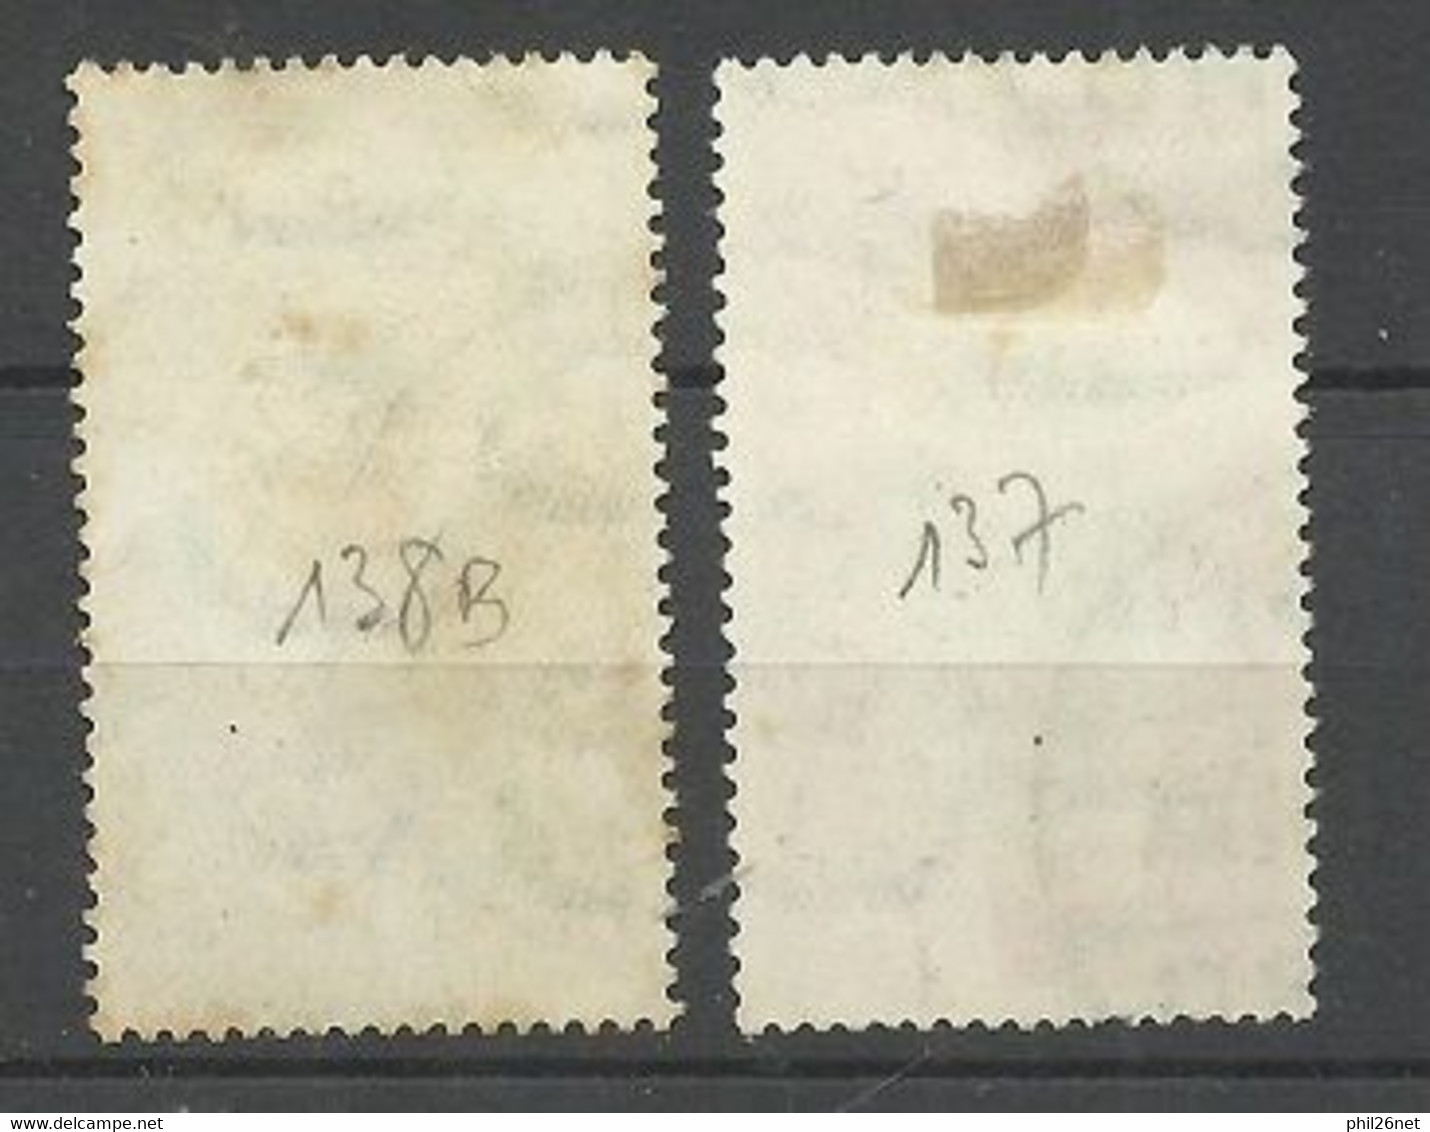 Egypte  N°137  Et 138B  Centre Noir  Prince Farouk  Oblitérés    B/T B    Voir Scans  Soldé ! ! ! - Used Stamps